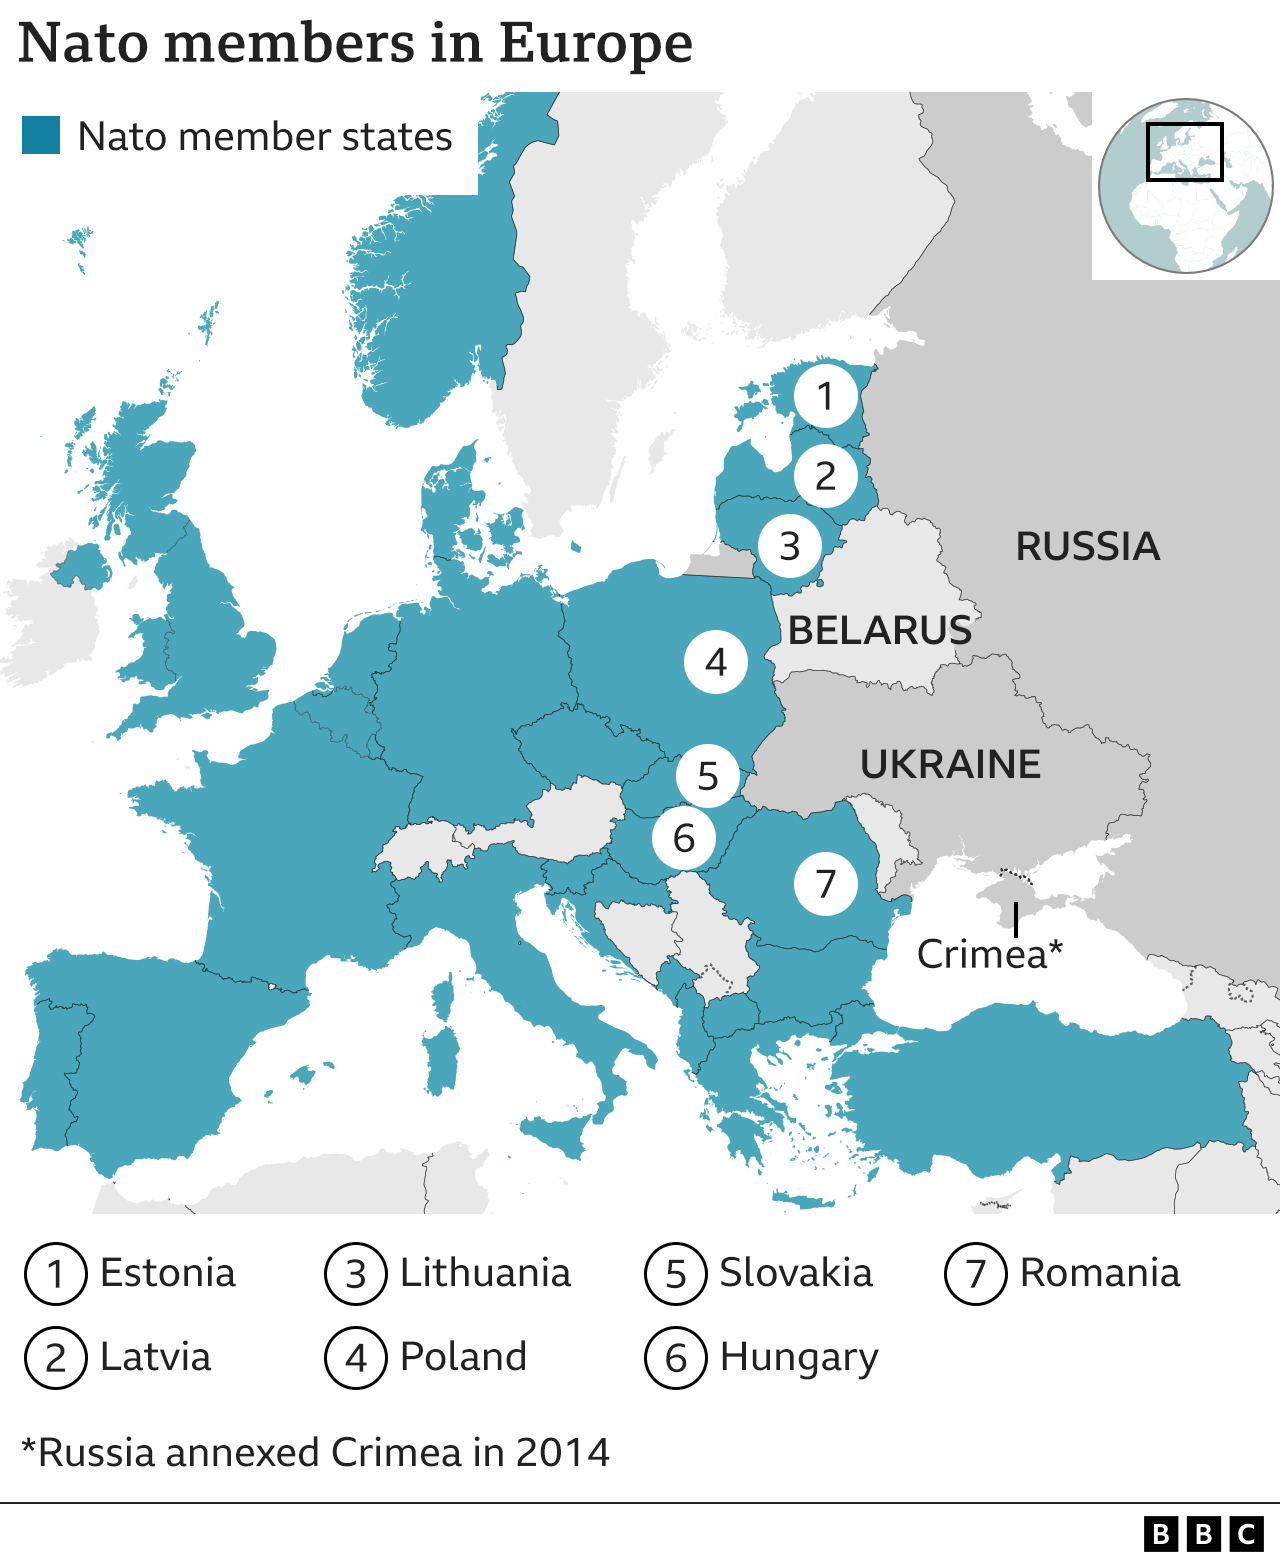 La OTAN en el mapa de Europa del Este